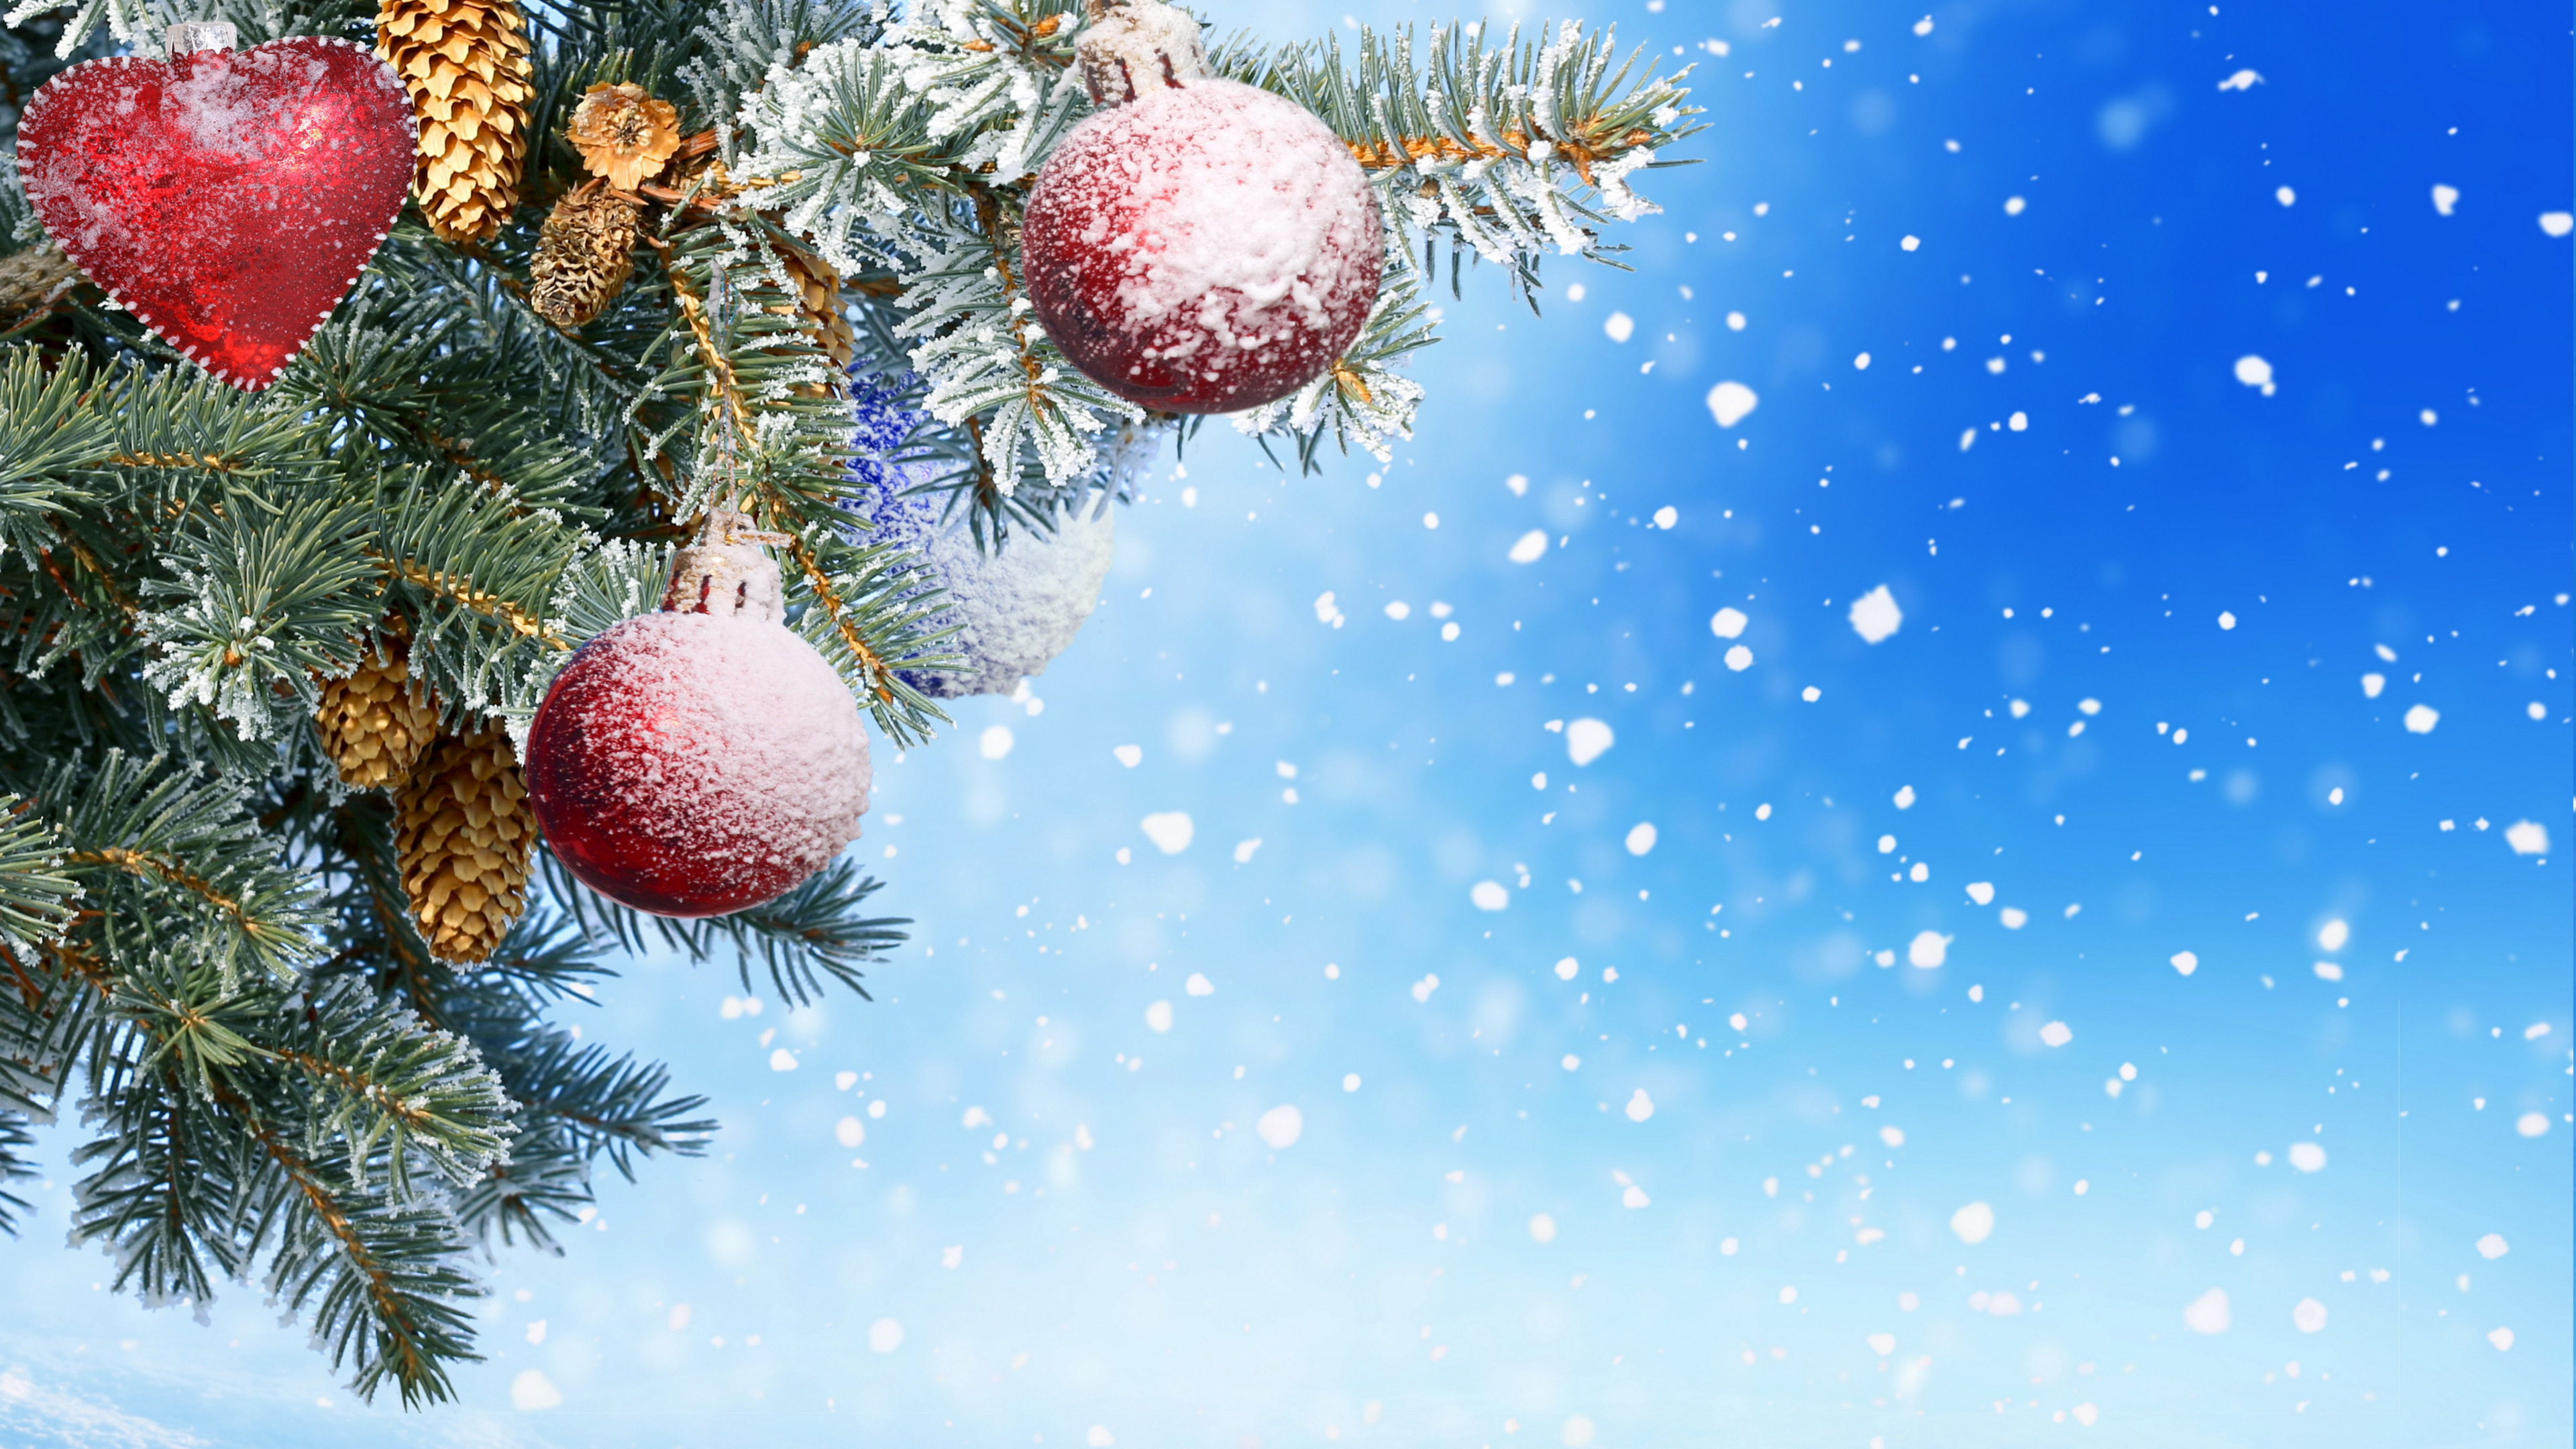 新的一年, 圣诞节那天, 圣诞节的装饰品, Fir, 松的家庭 壁纸 3840x2160 允许